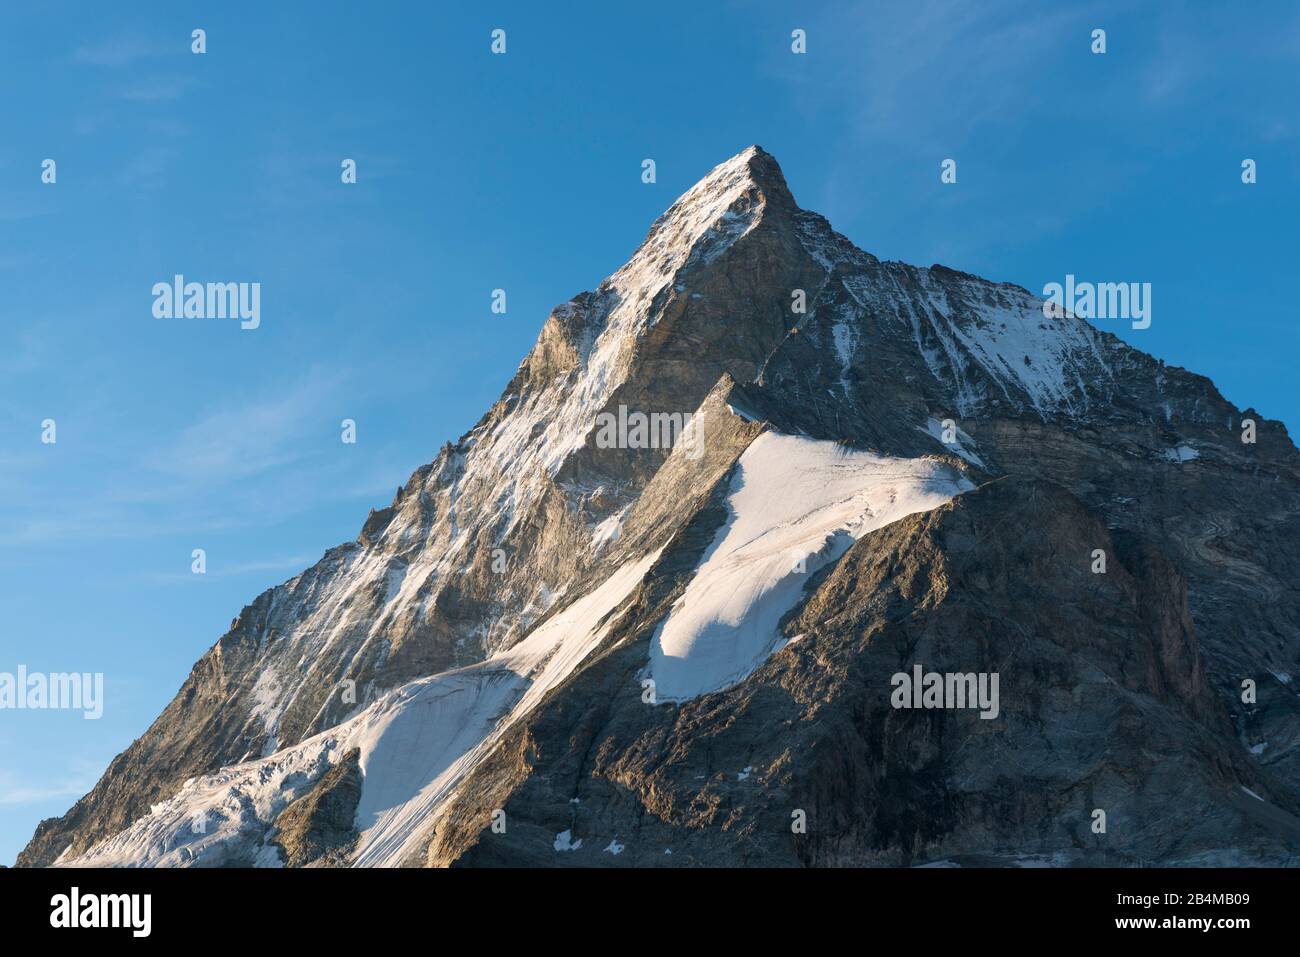 Suisse, Valais, Haute route Chamonix Zermatt, spectaculaire face nord raide et Hörnligarat Matterhorn à l'aube Banque D'Images